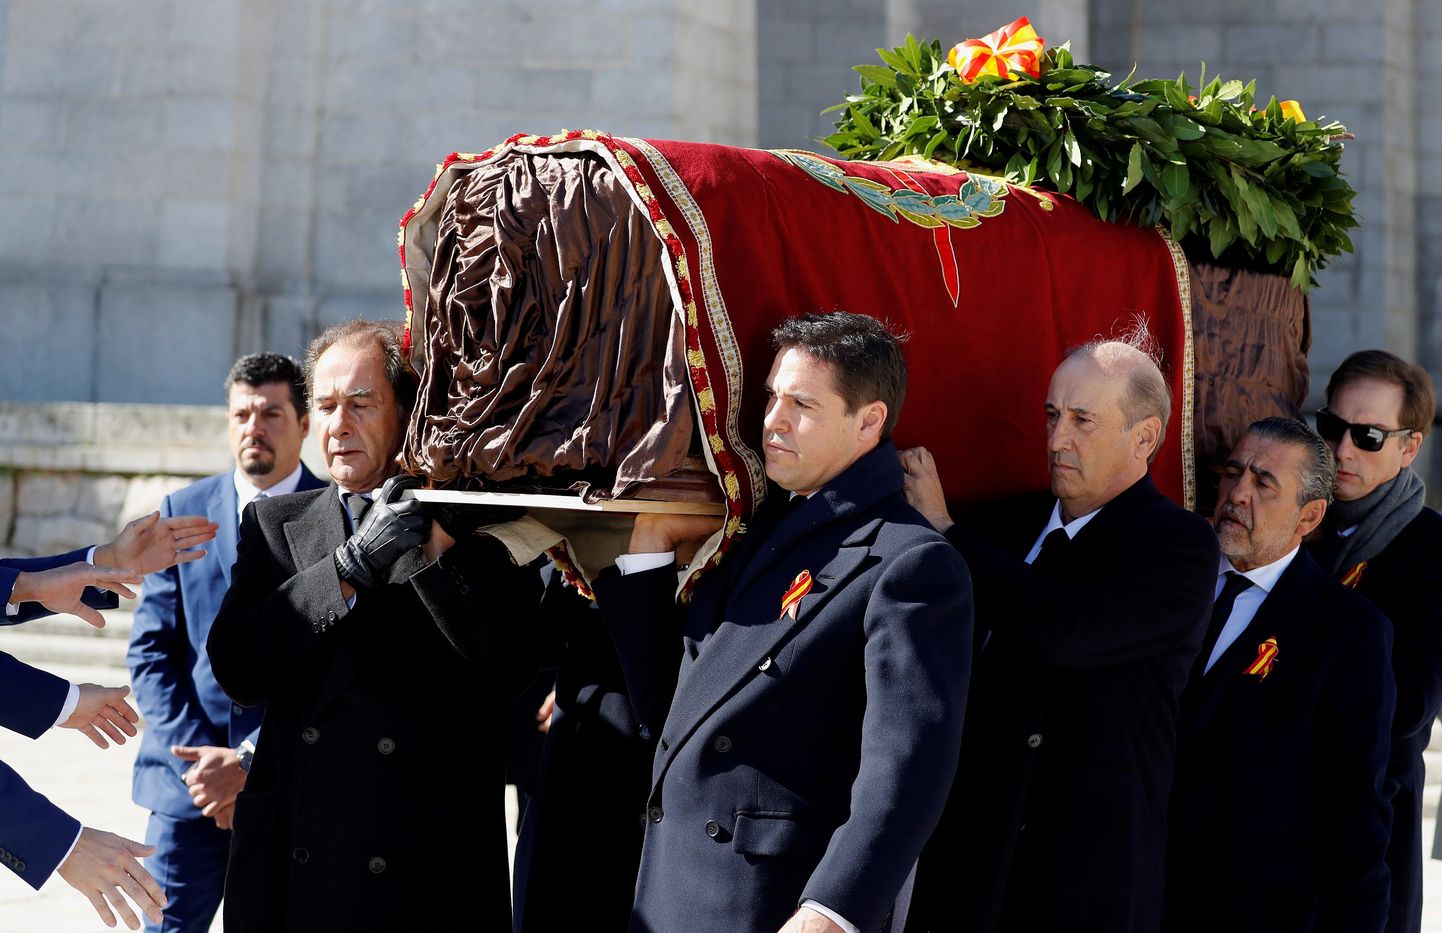 Franco sugulased kandmas diktaatori surnukeha välja mausoleumist, kus see lebas 1975. aastast saati.